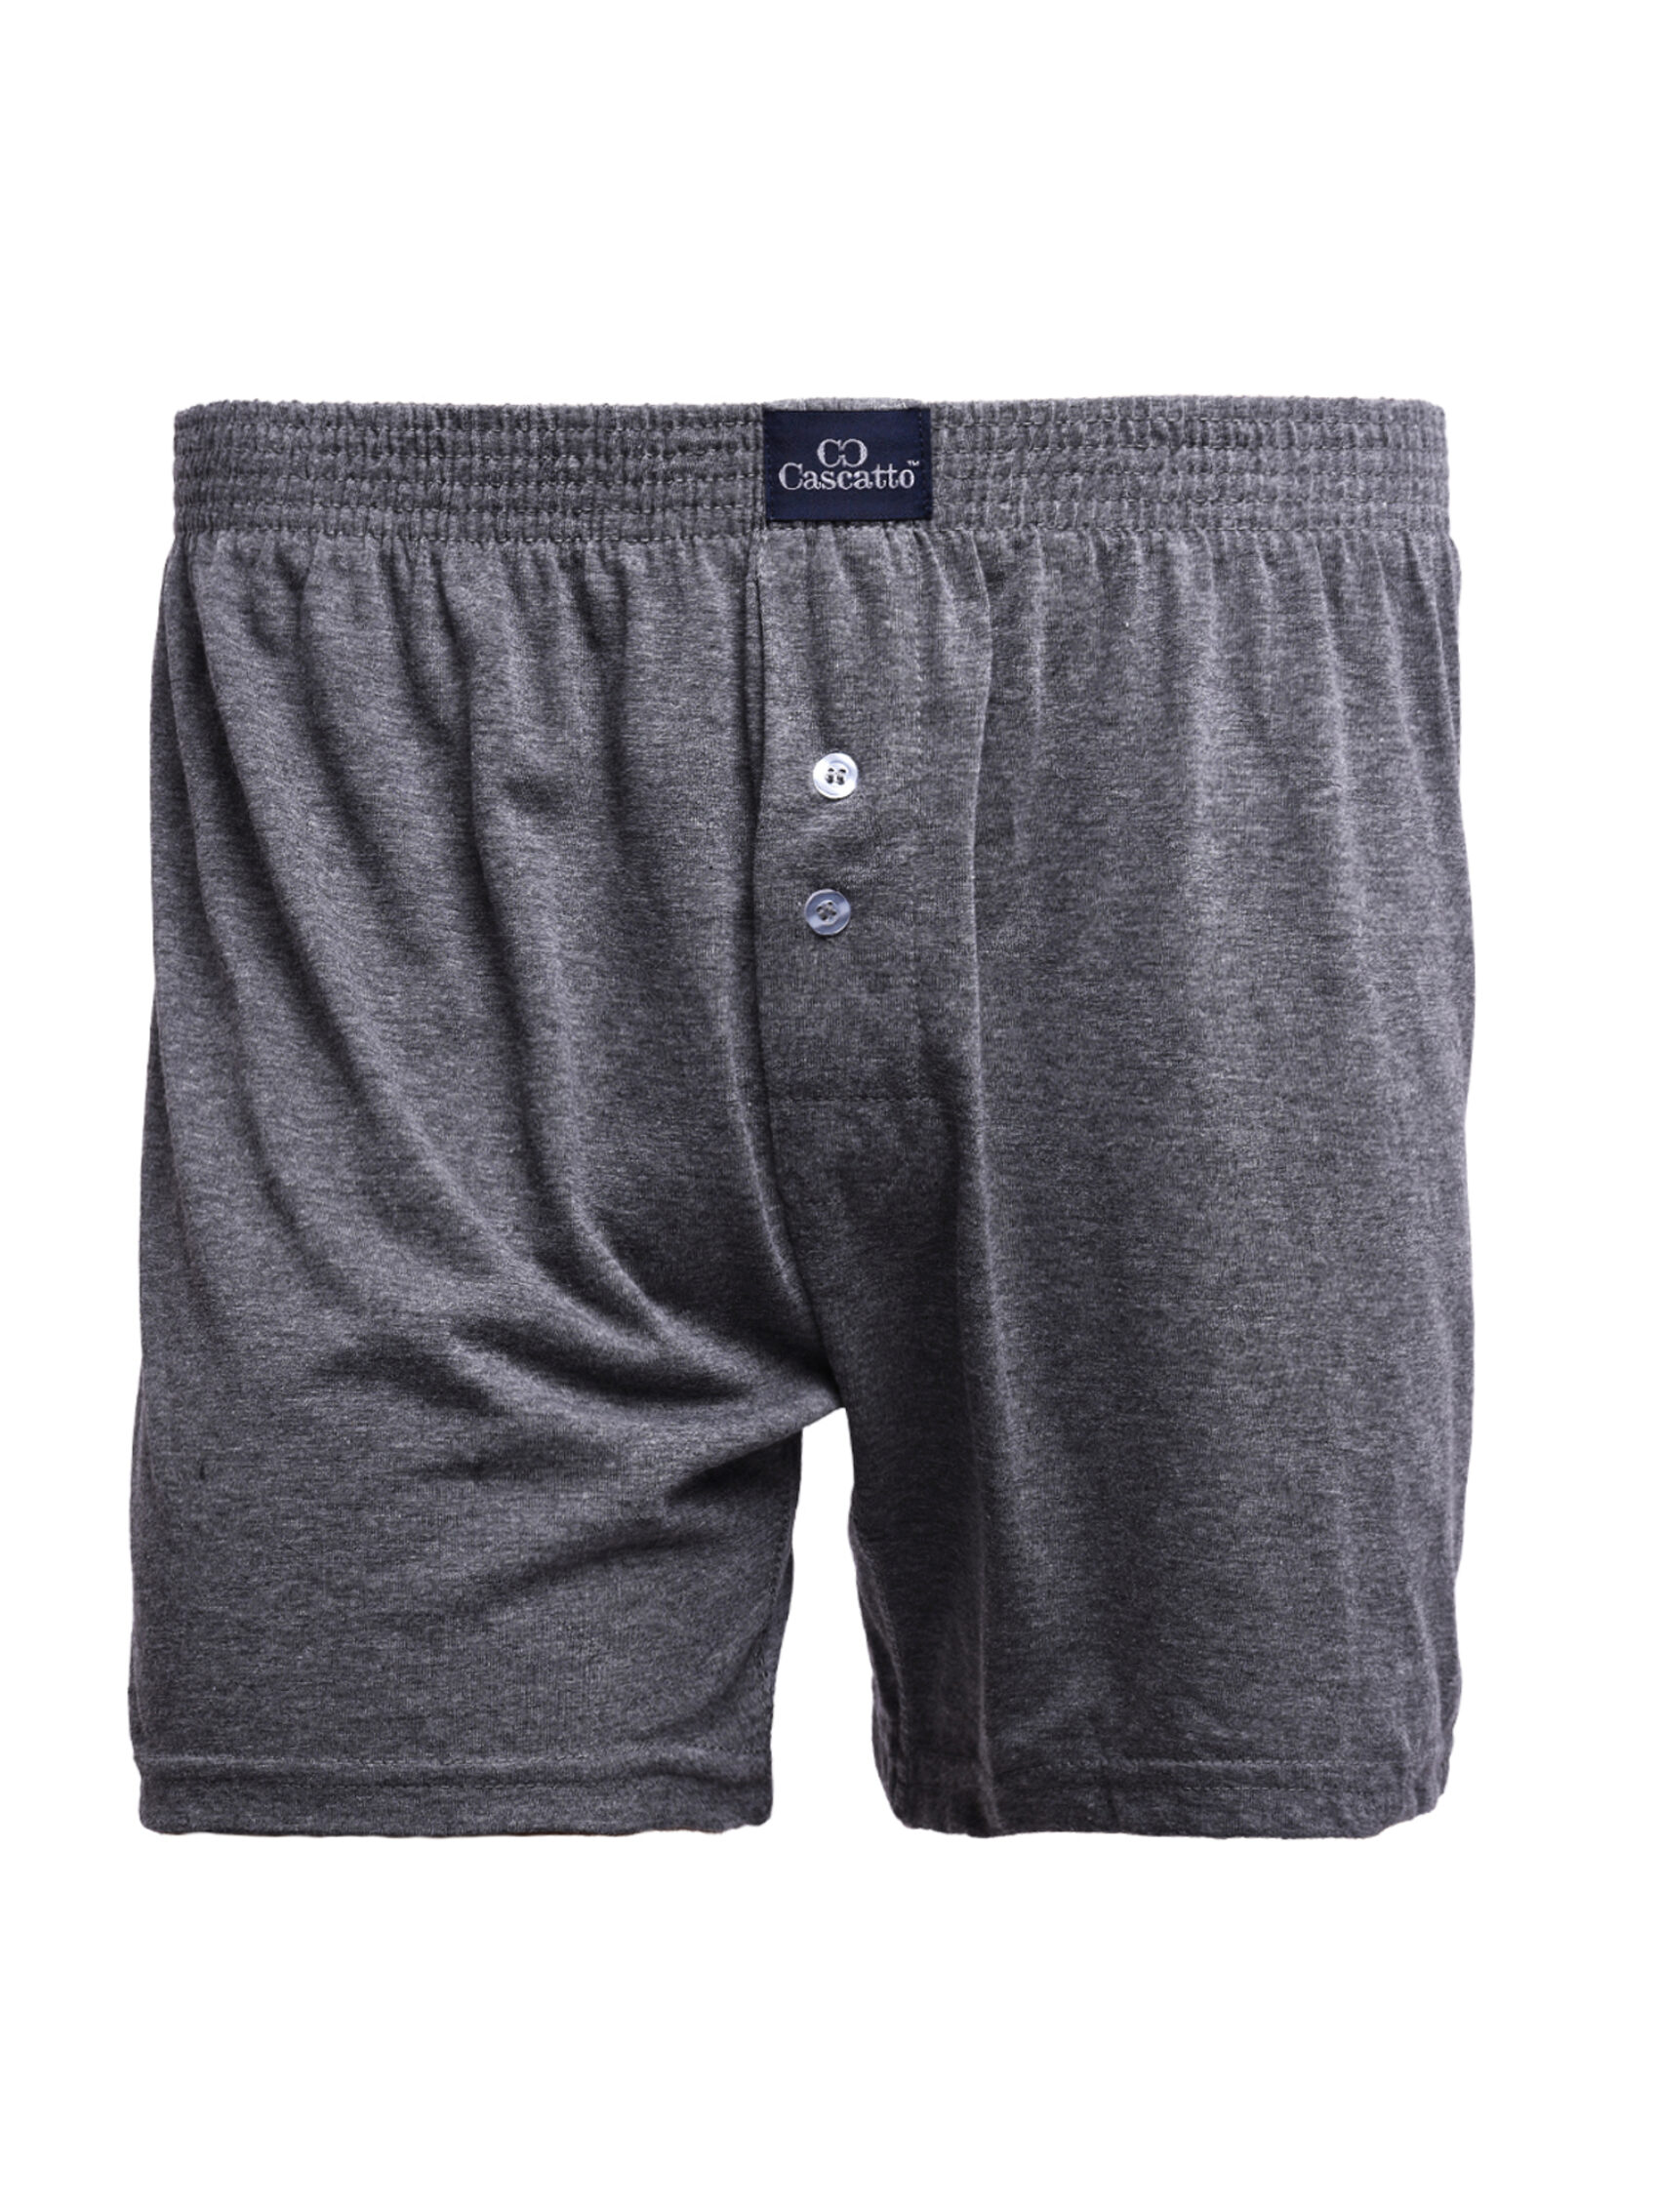 Трусы Cascatto шорты для мужчин, серый, размер XL, MSH1802